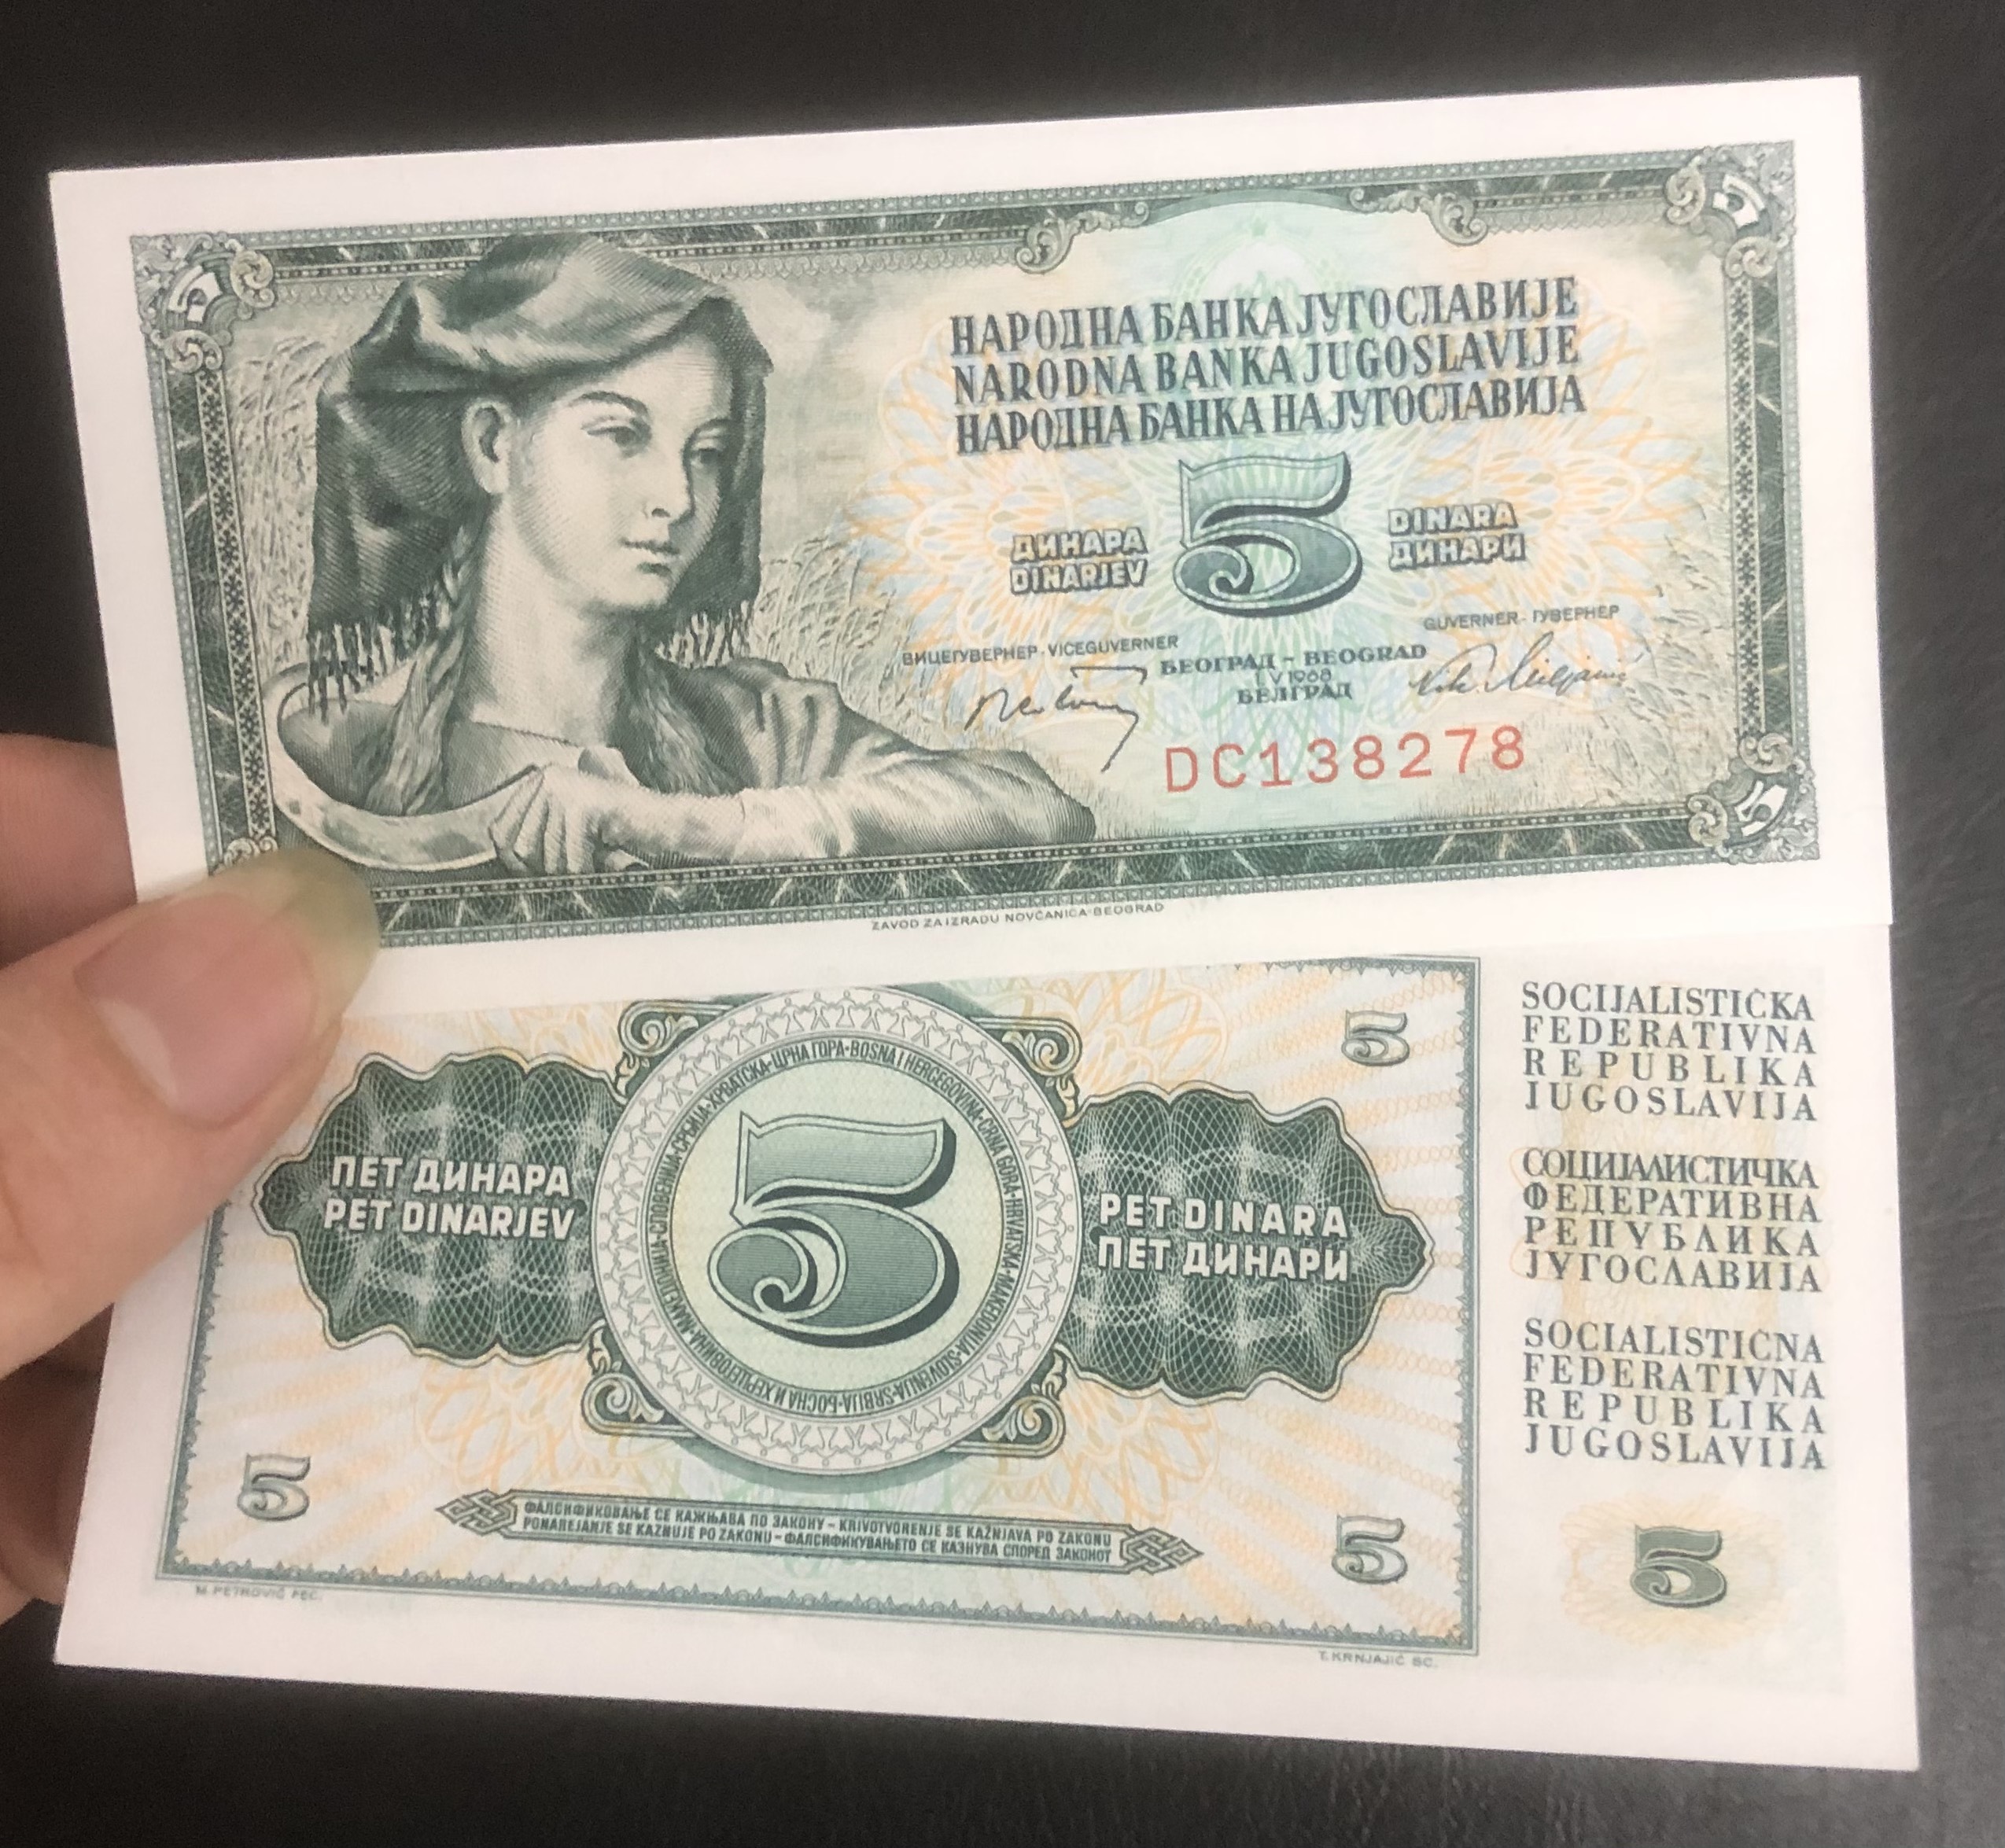 Tiền Liên bang Nam Tư cũ 5 dinara mới cứng sưu tầm, kèm phơi nilong bảo quản tiền